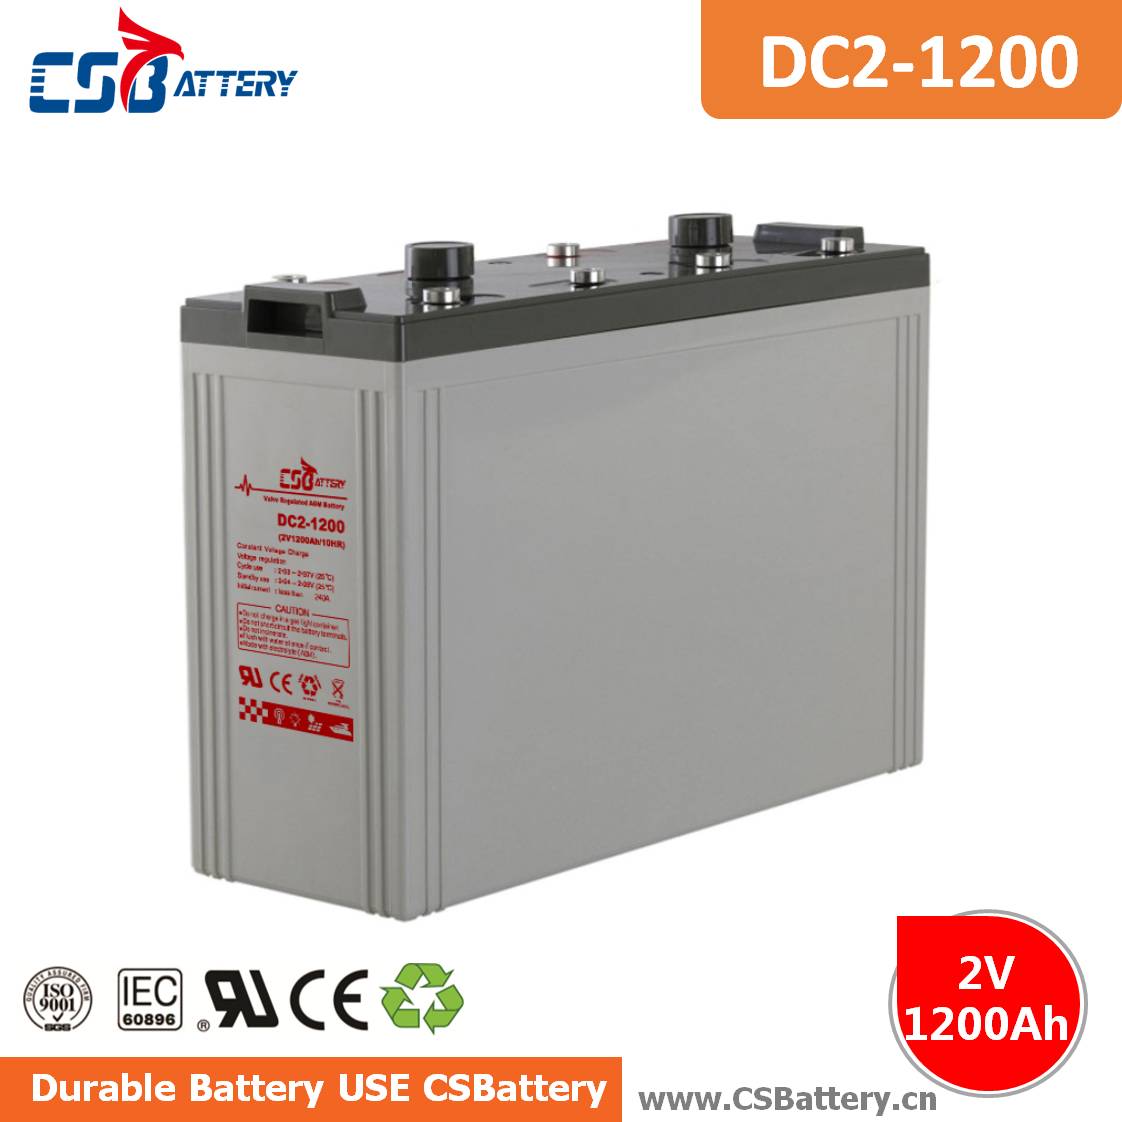 DC2-1200 2V 1200Ah Deep Cycle AGM Battery